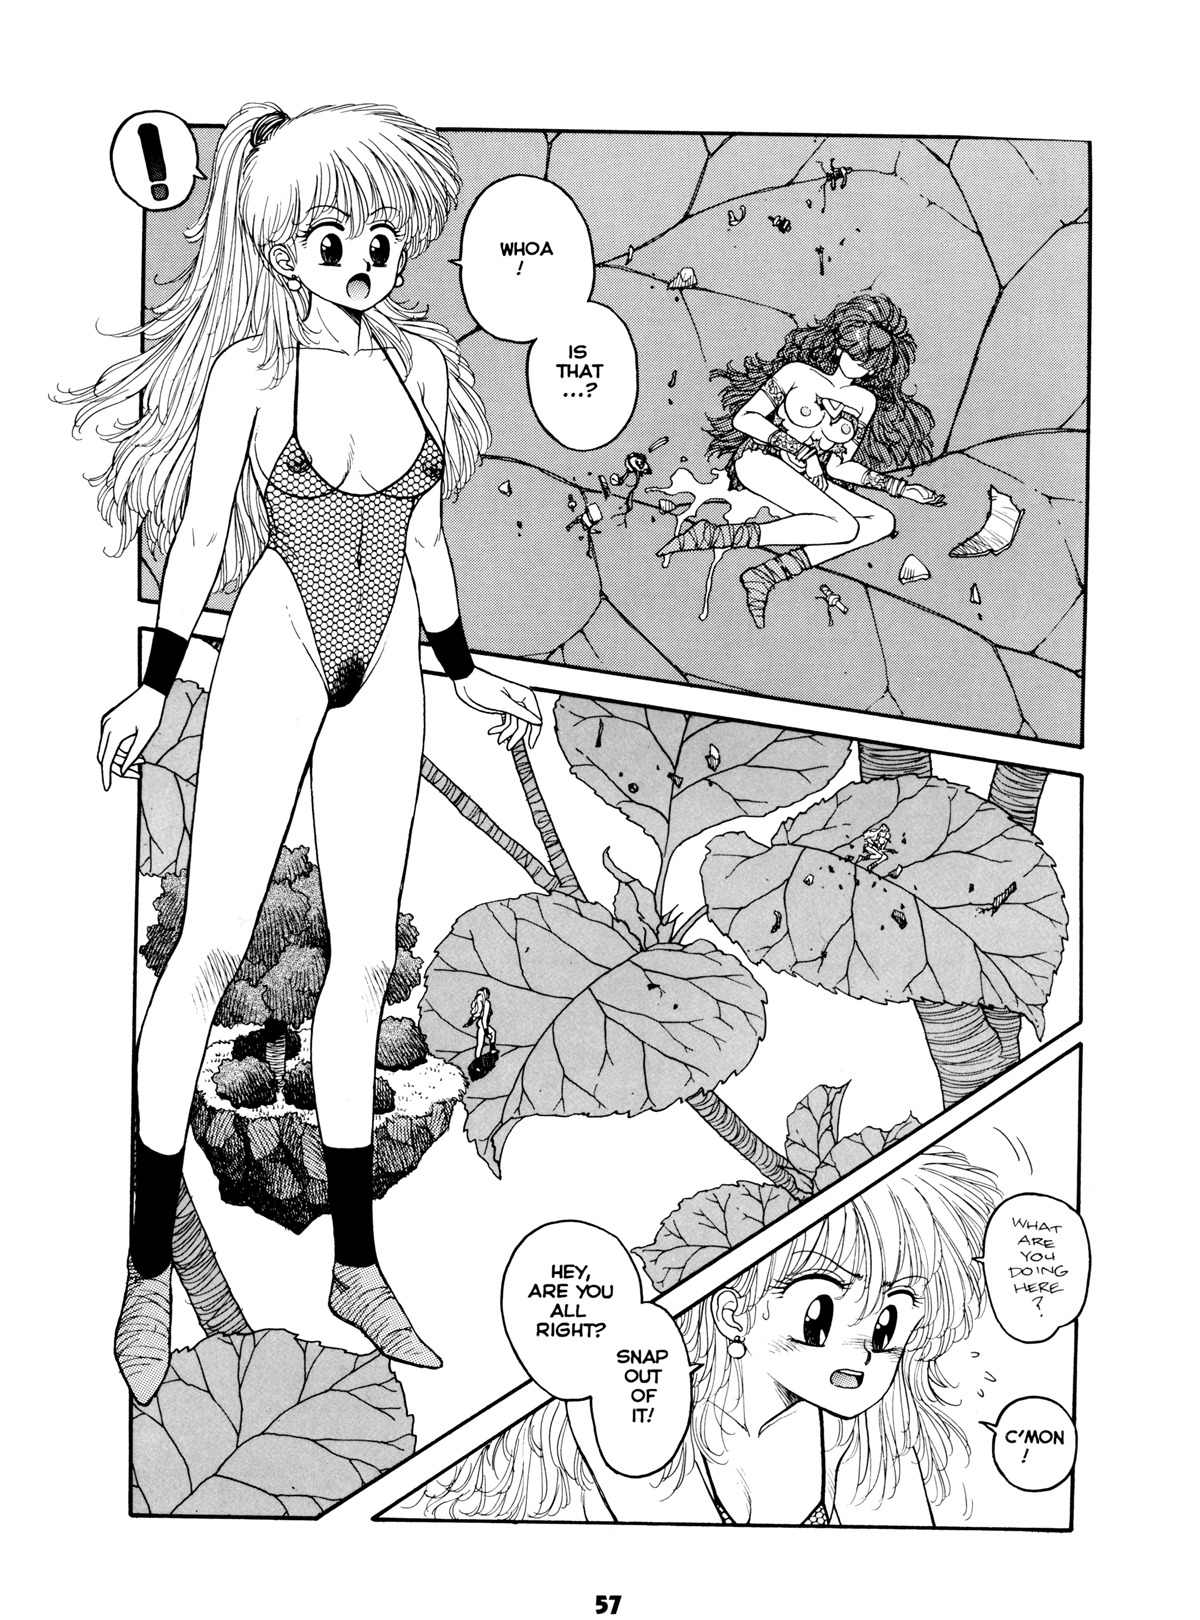 Misty Girl Extreme 56 hentai manga